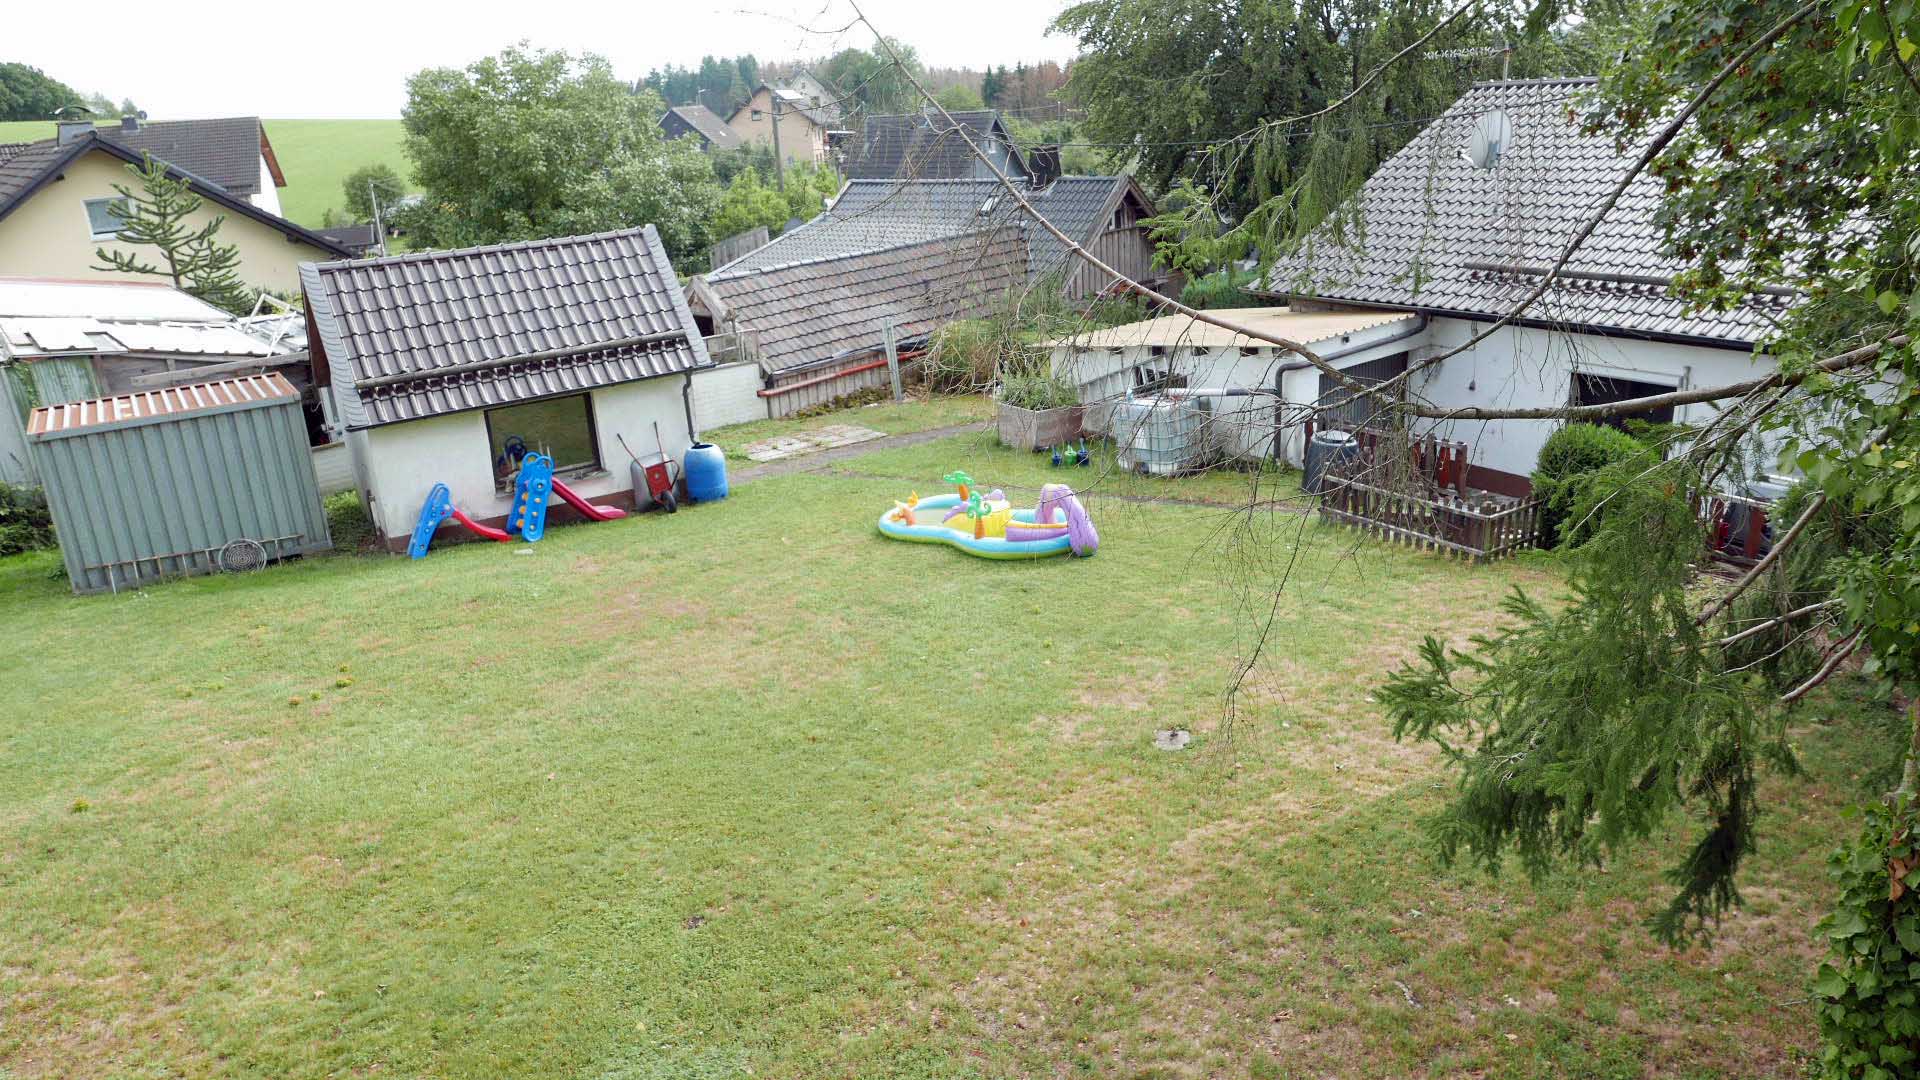 Verkauft: Einfamilienhaus mit Garage, Blick zum Grundstück (682 m²) mit Spielwiese